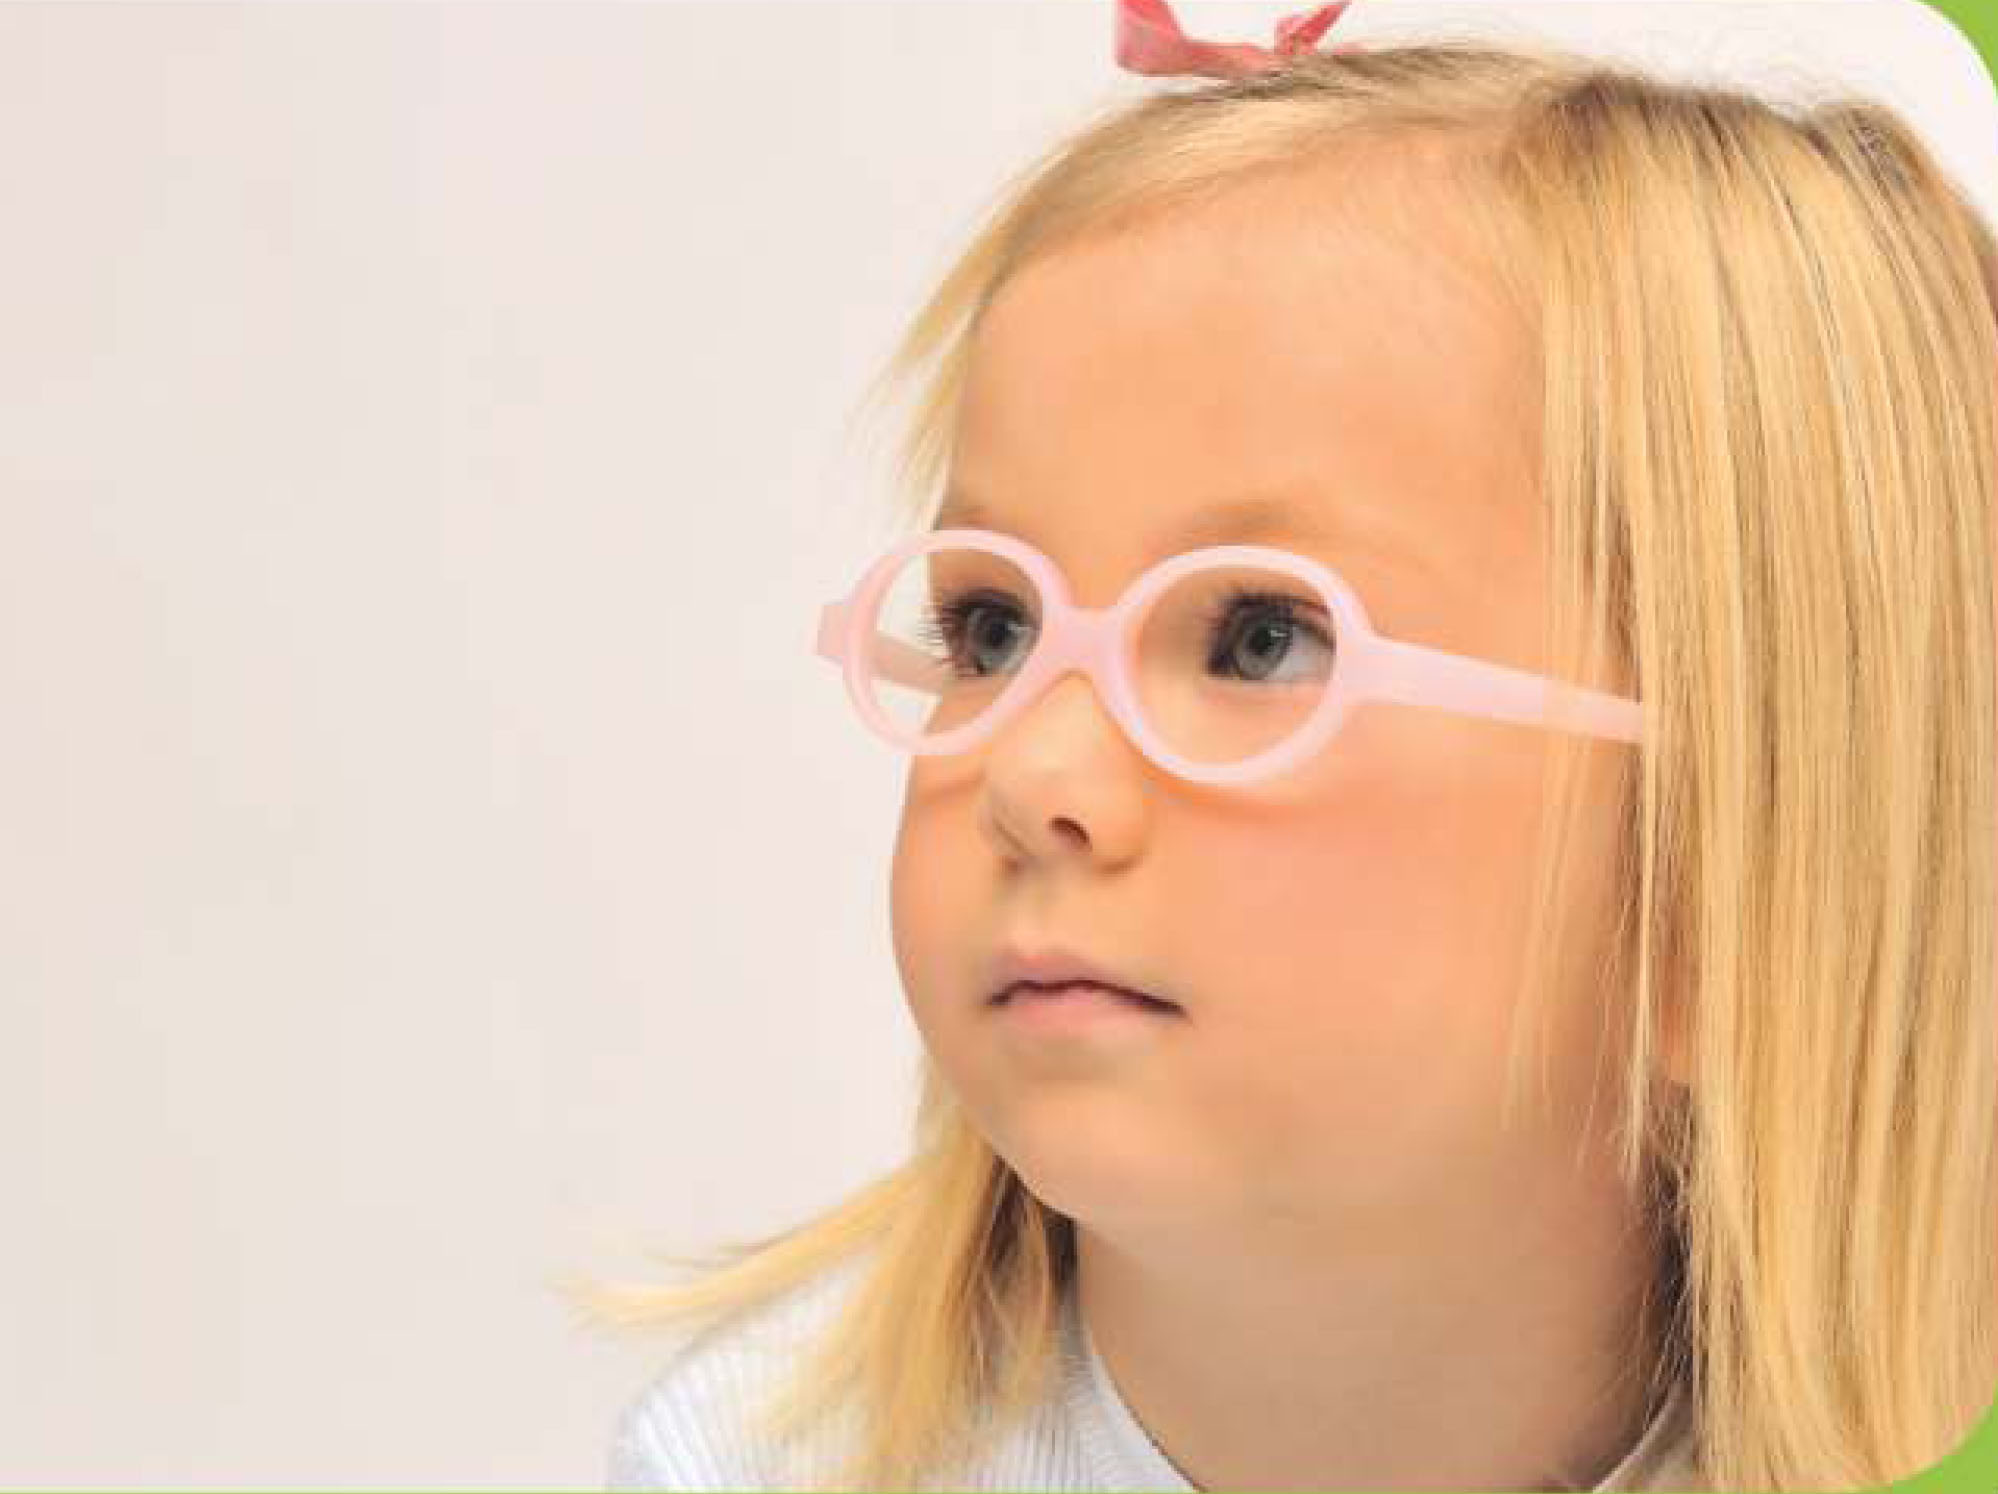 Consultatia oftalmologica pentru copii cu aparatul Plusoptix